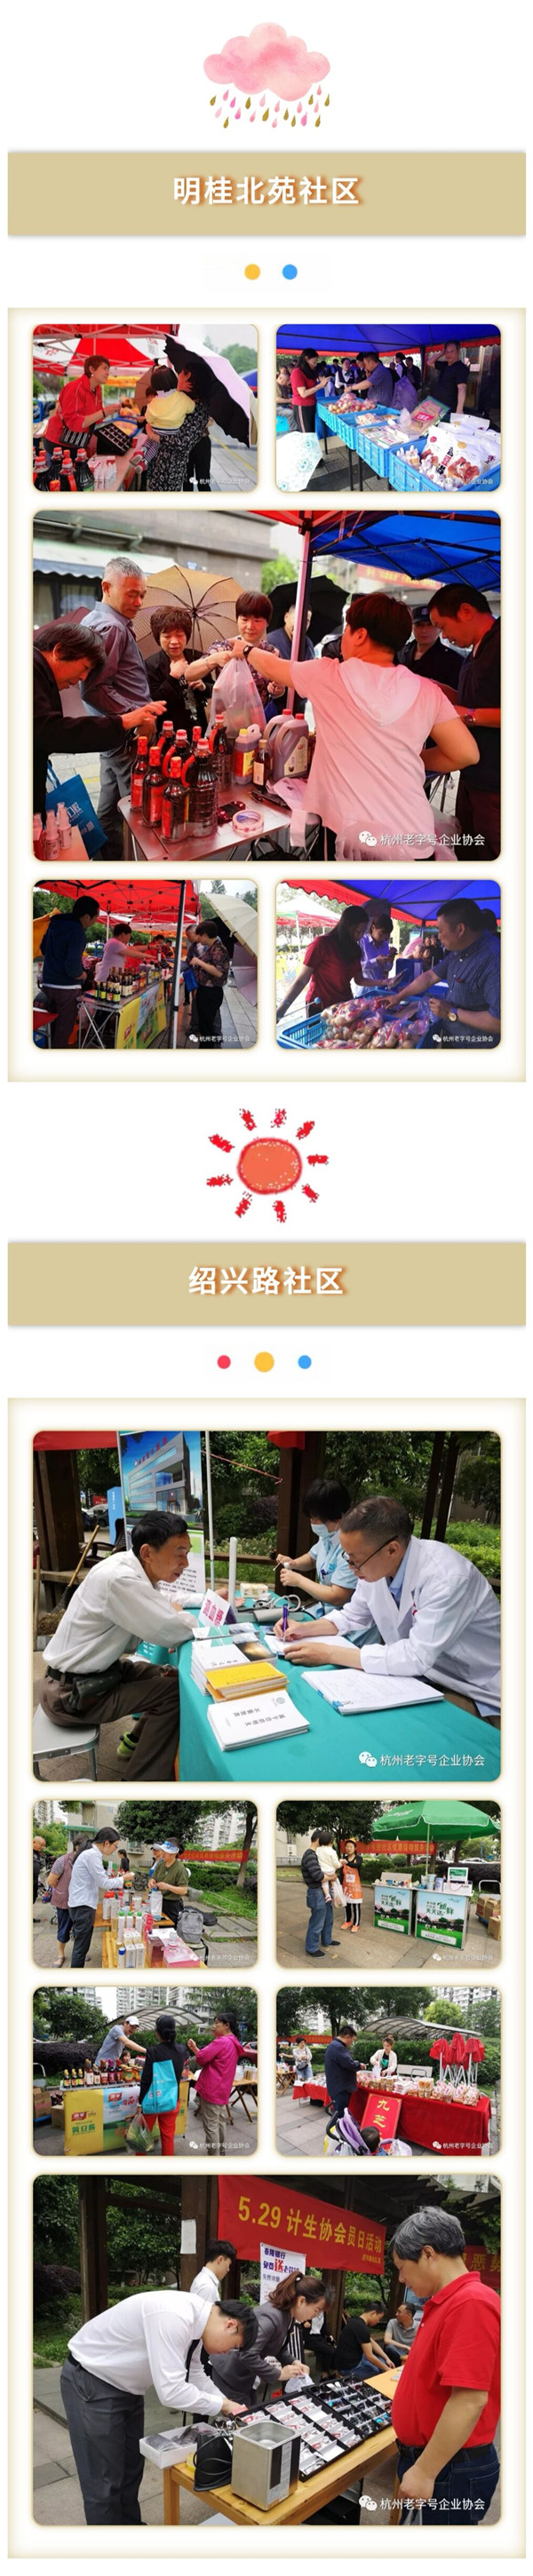 杭州老字号进社区公益促销服务活动在明桂北苑社区、绍兴路社区举行